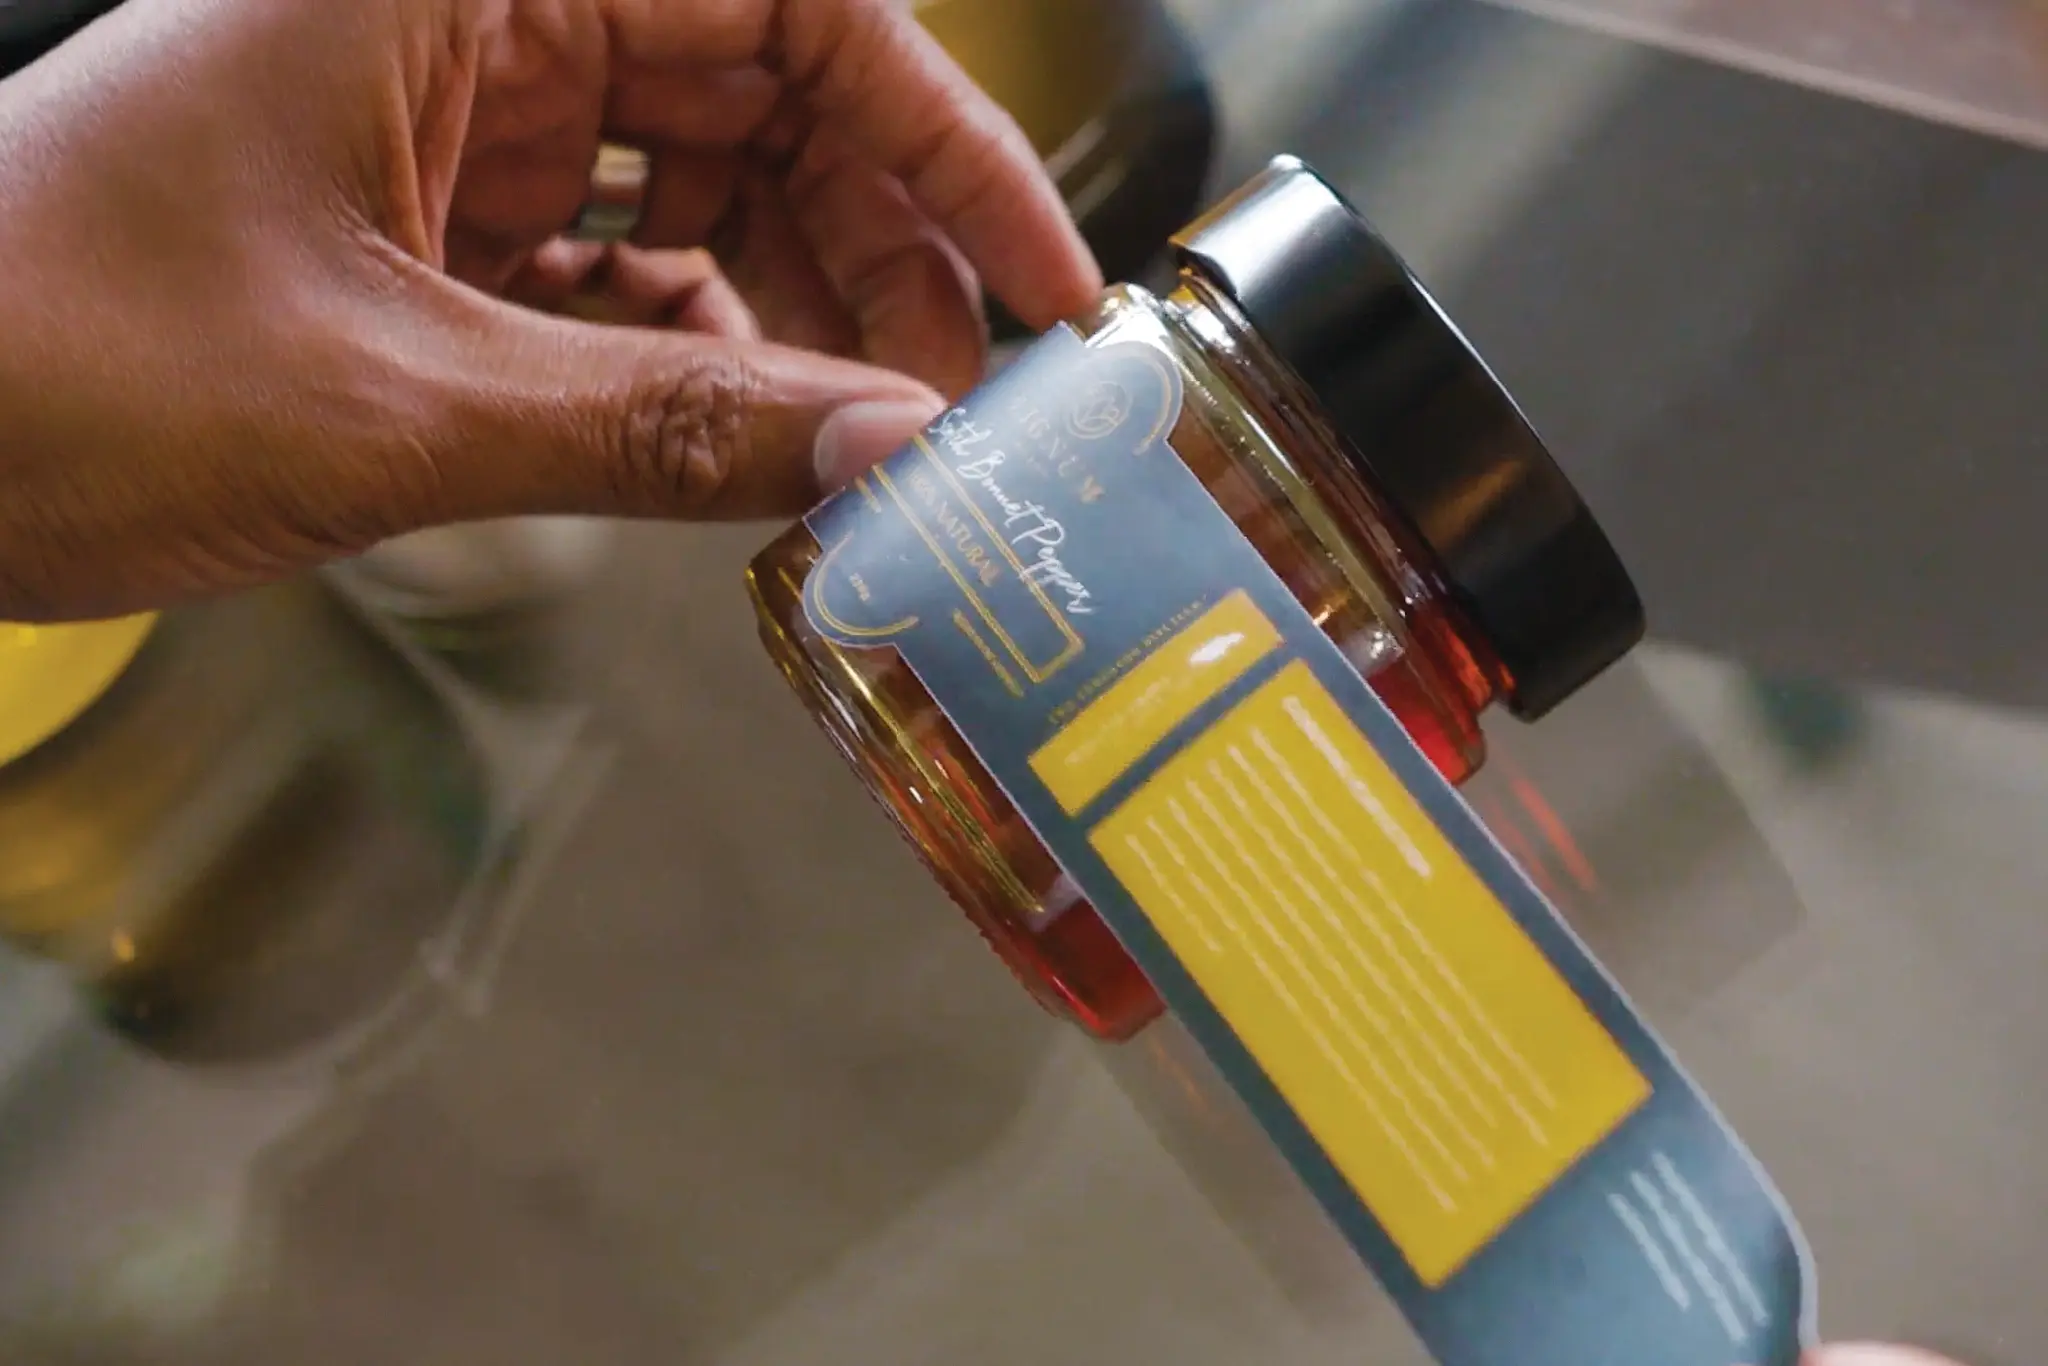 A hand holds a jar of Lignum Honey.